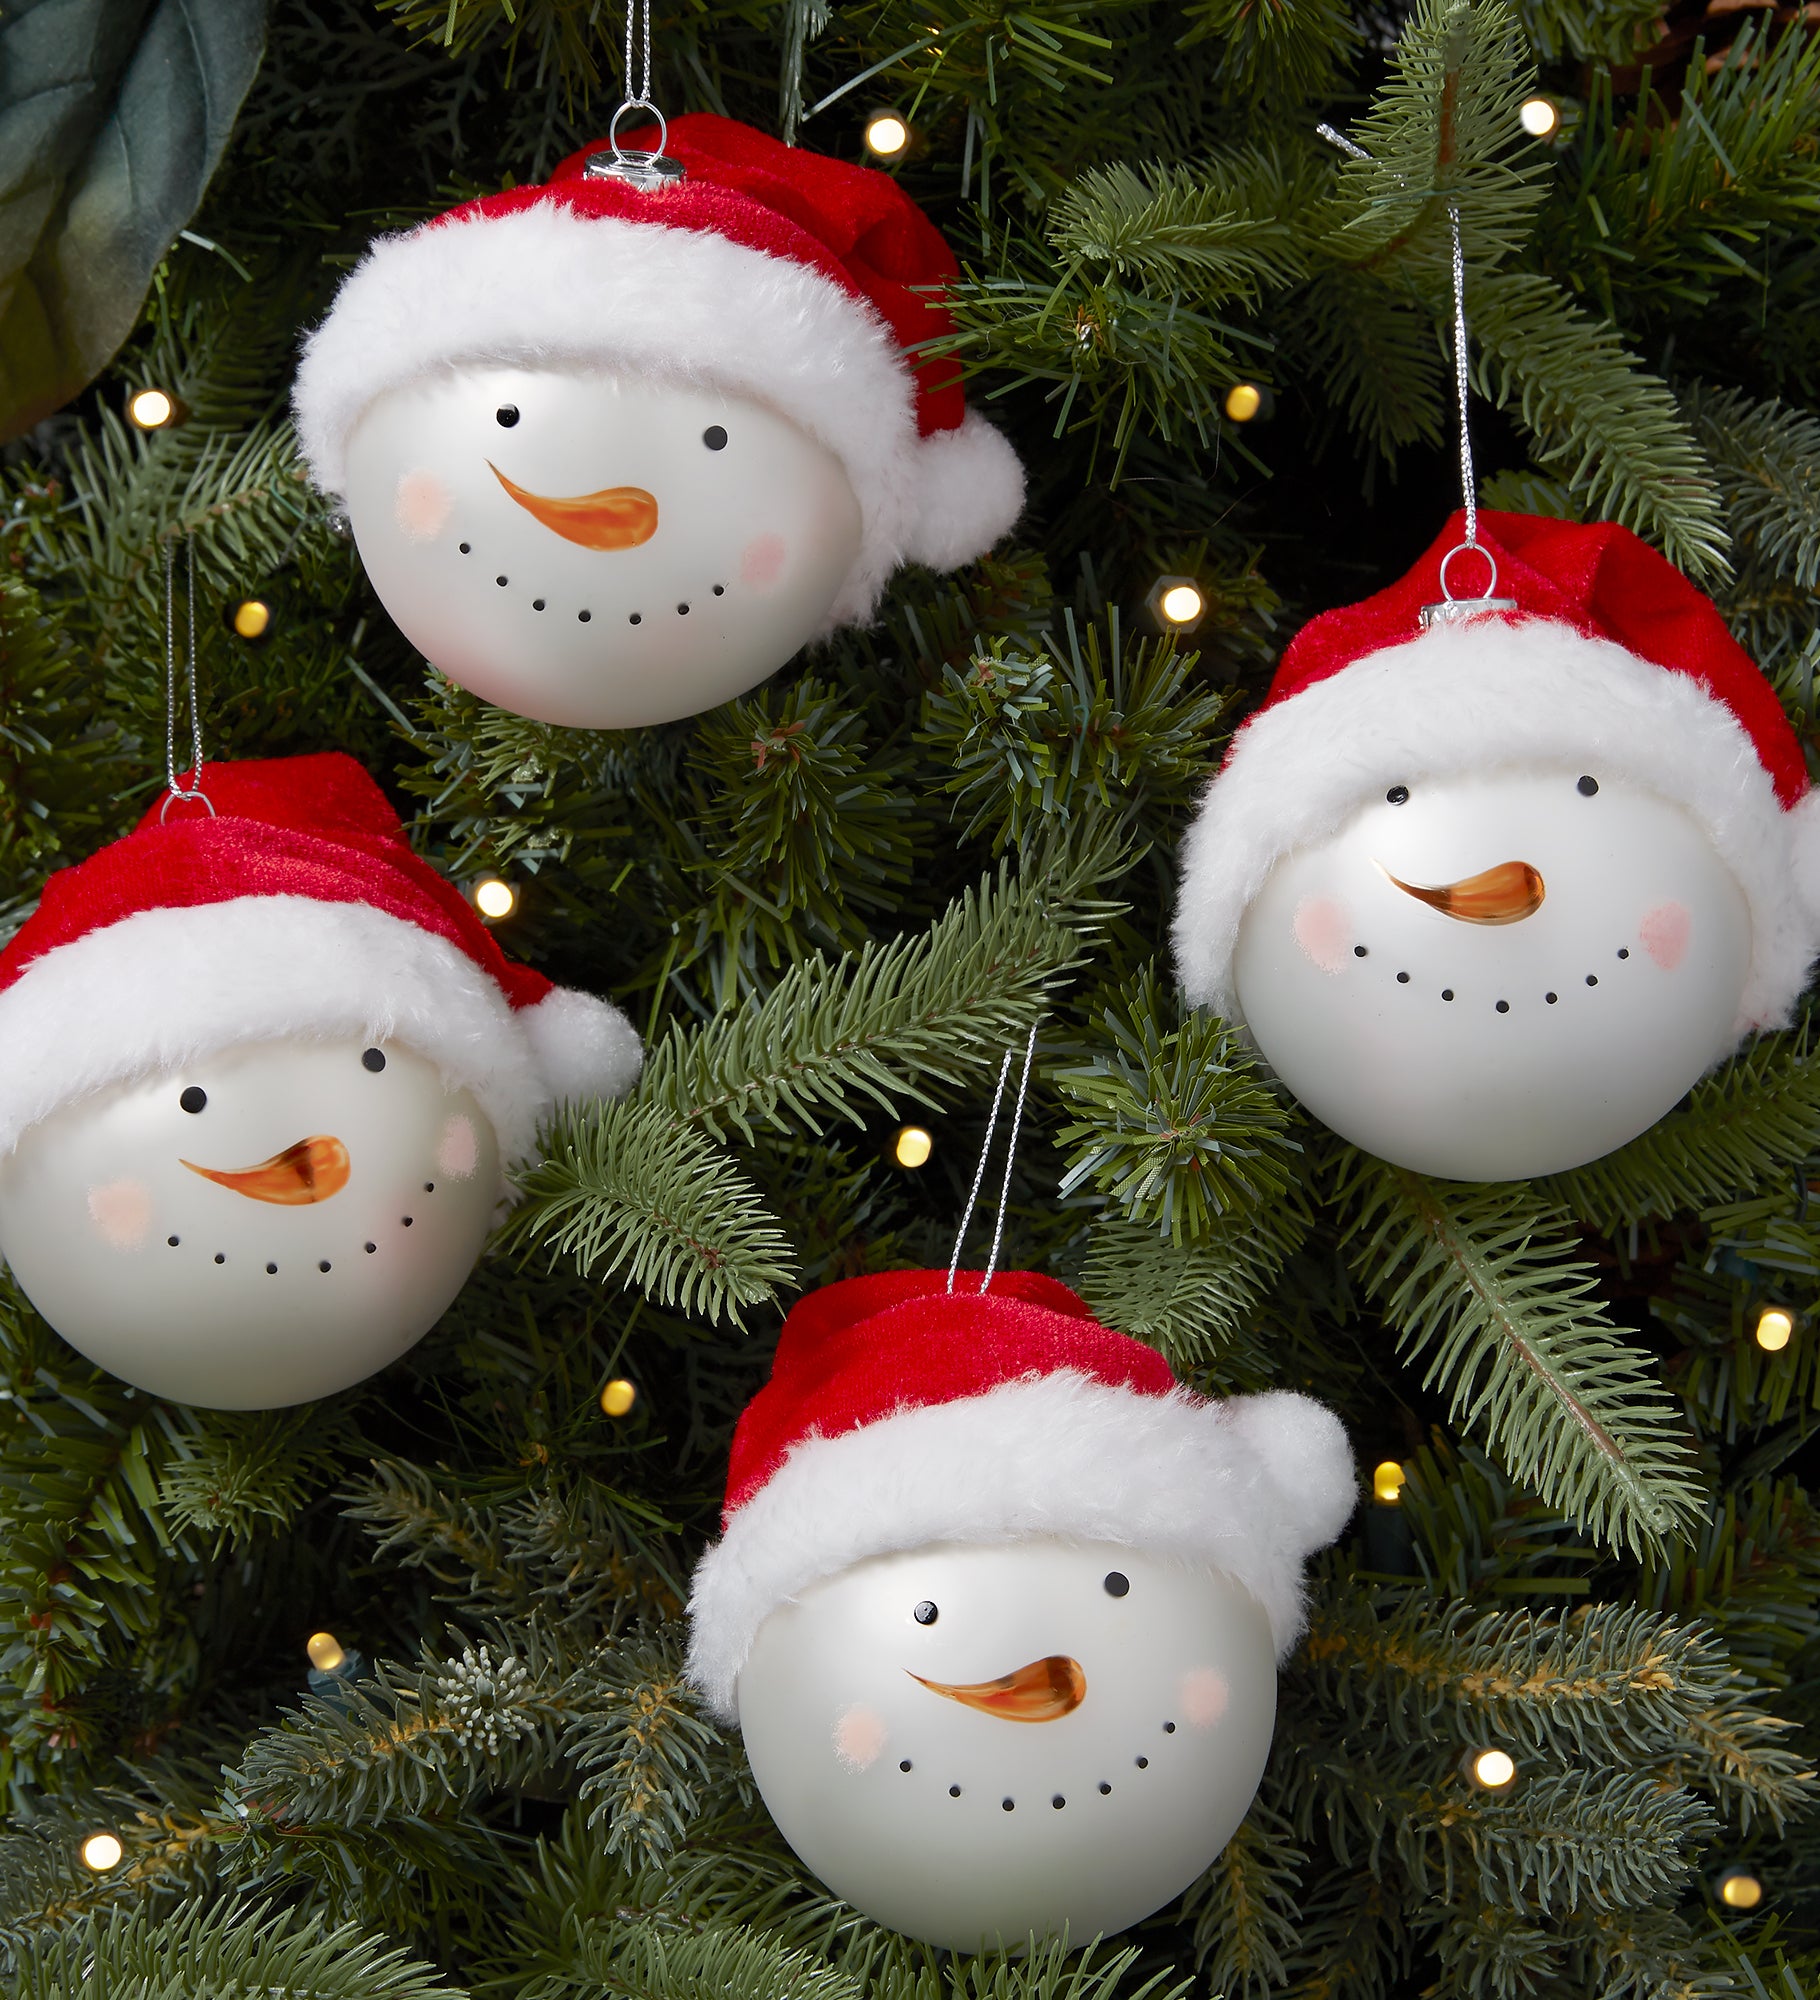 Snowman Face 4pc Ornament Set